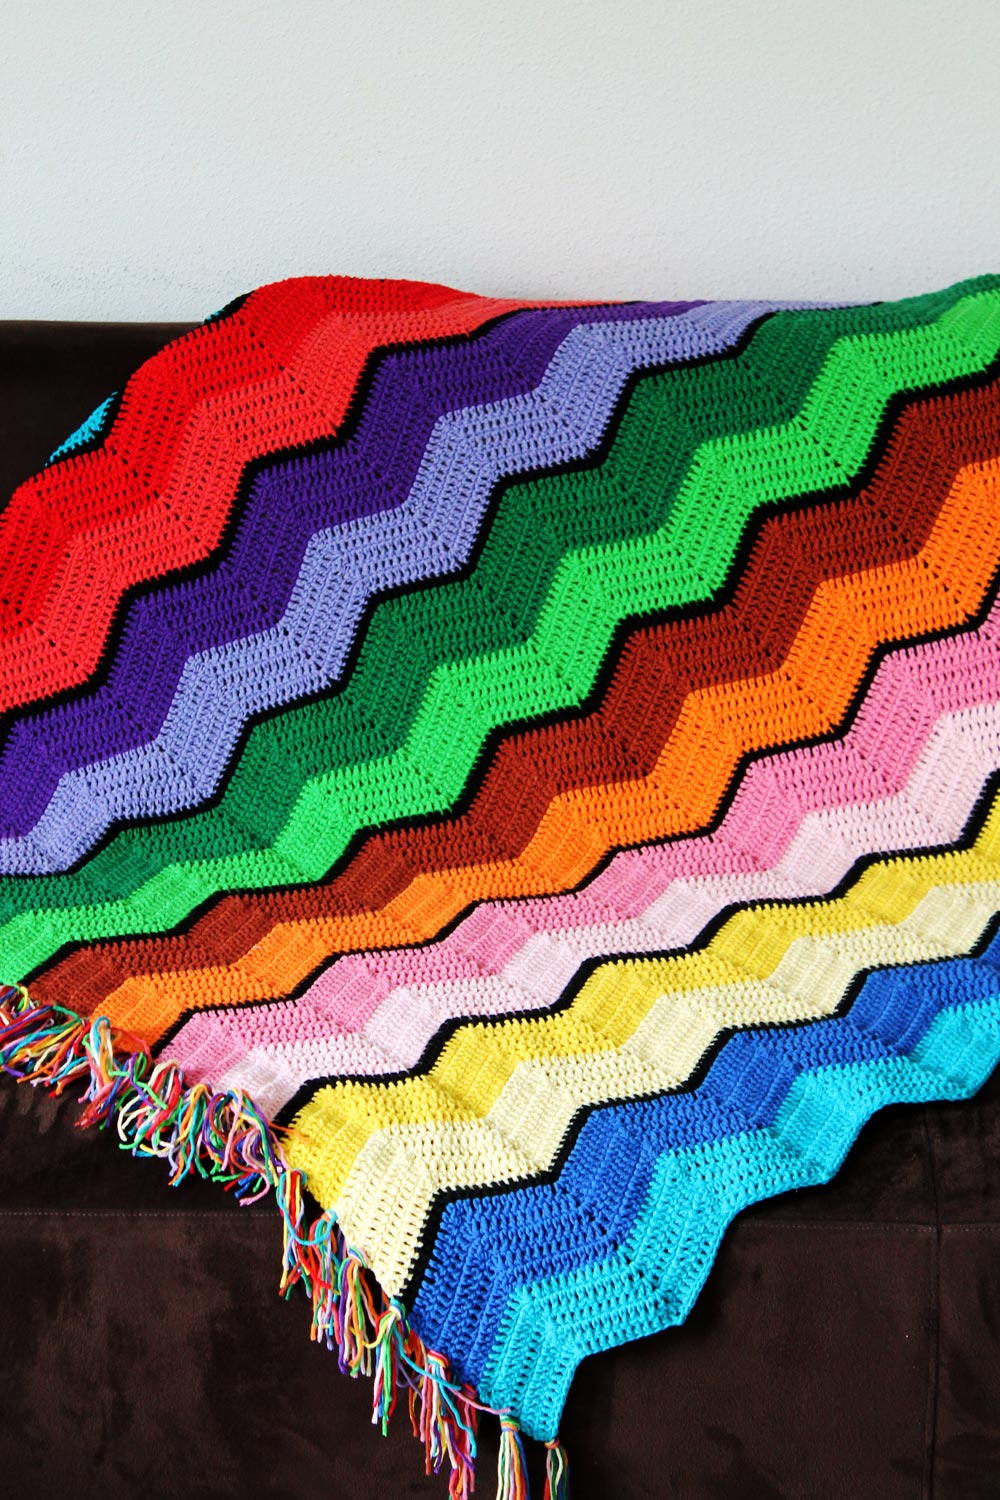 free printable beginner crochet afghan patterns